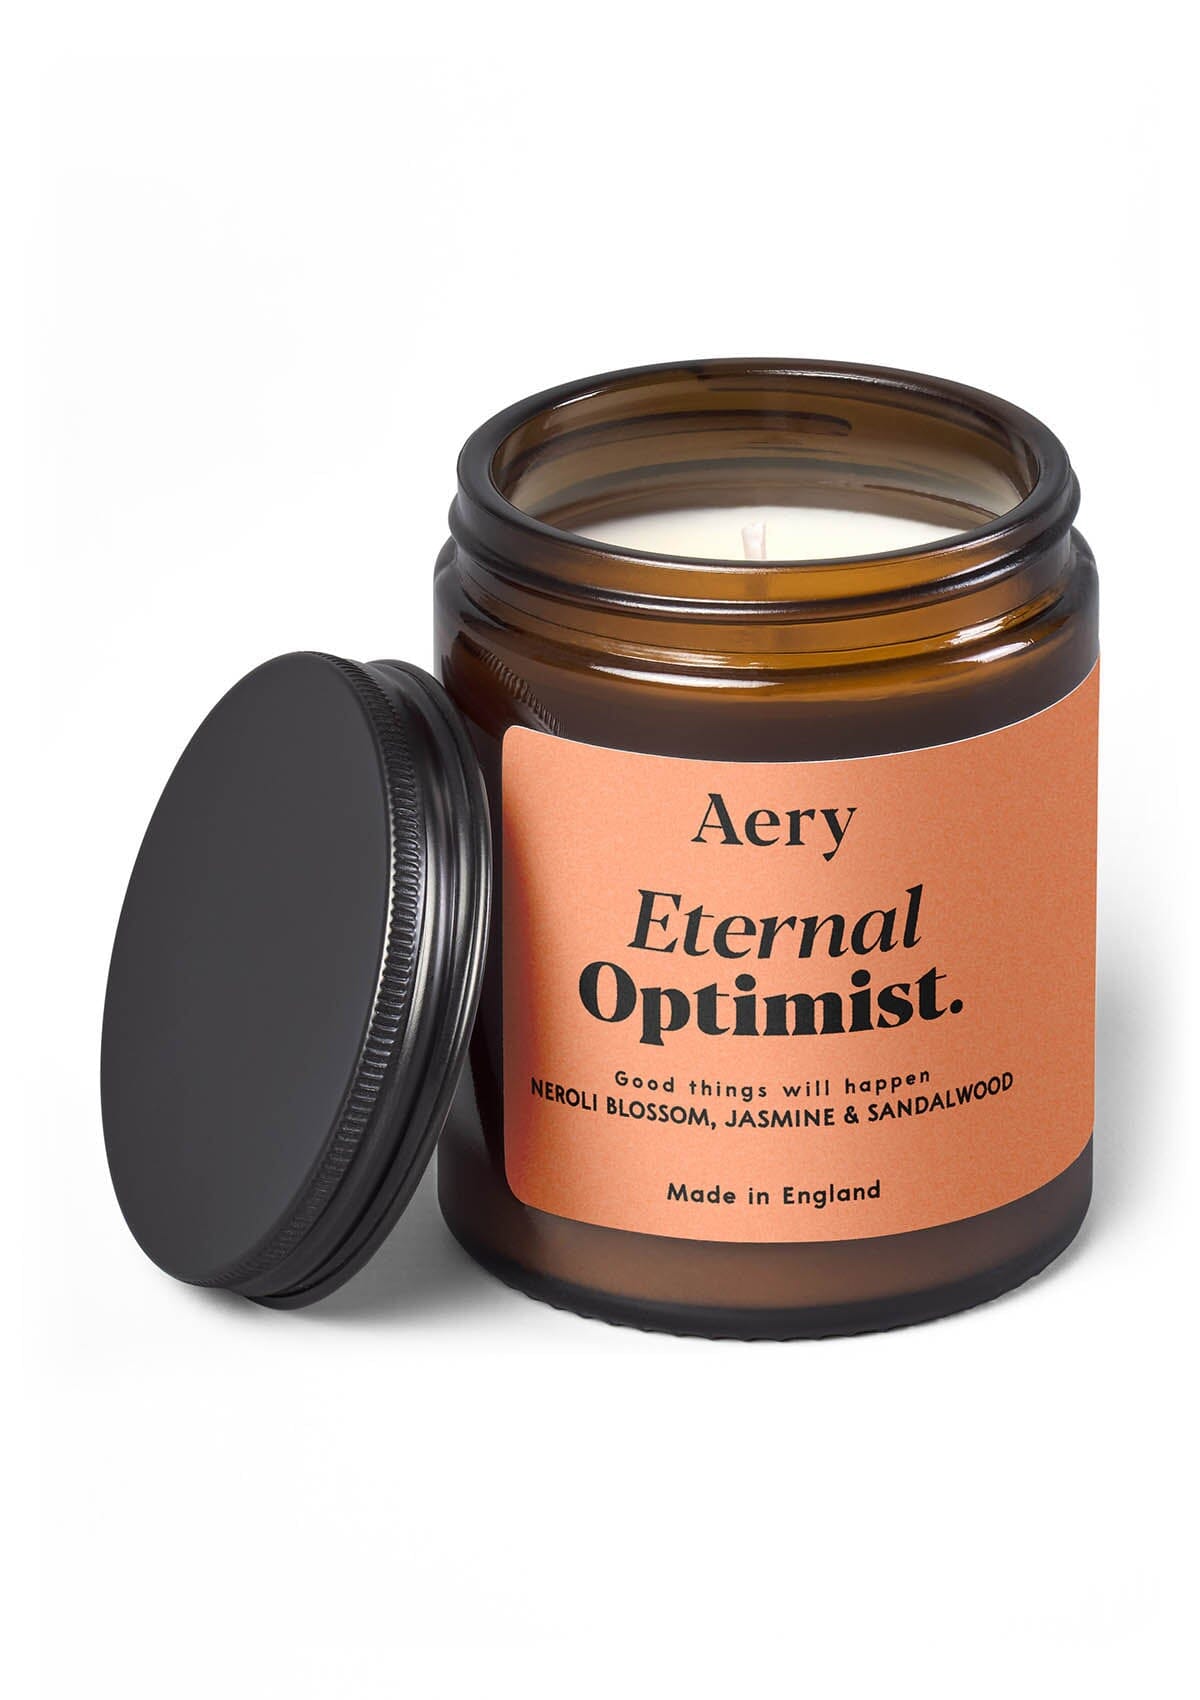 orange Eternal Optimist jar candle by Aery on white background  